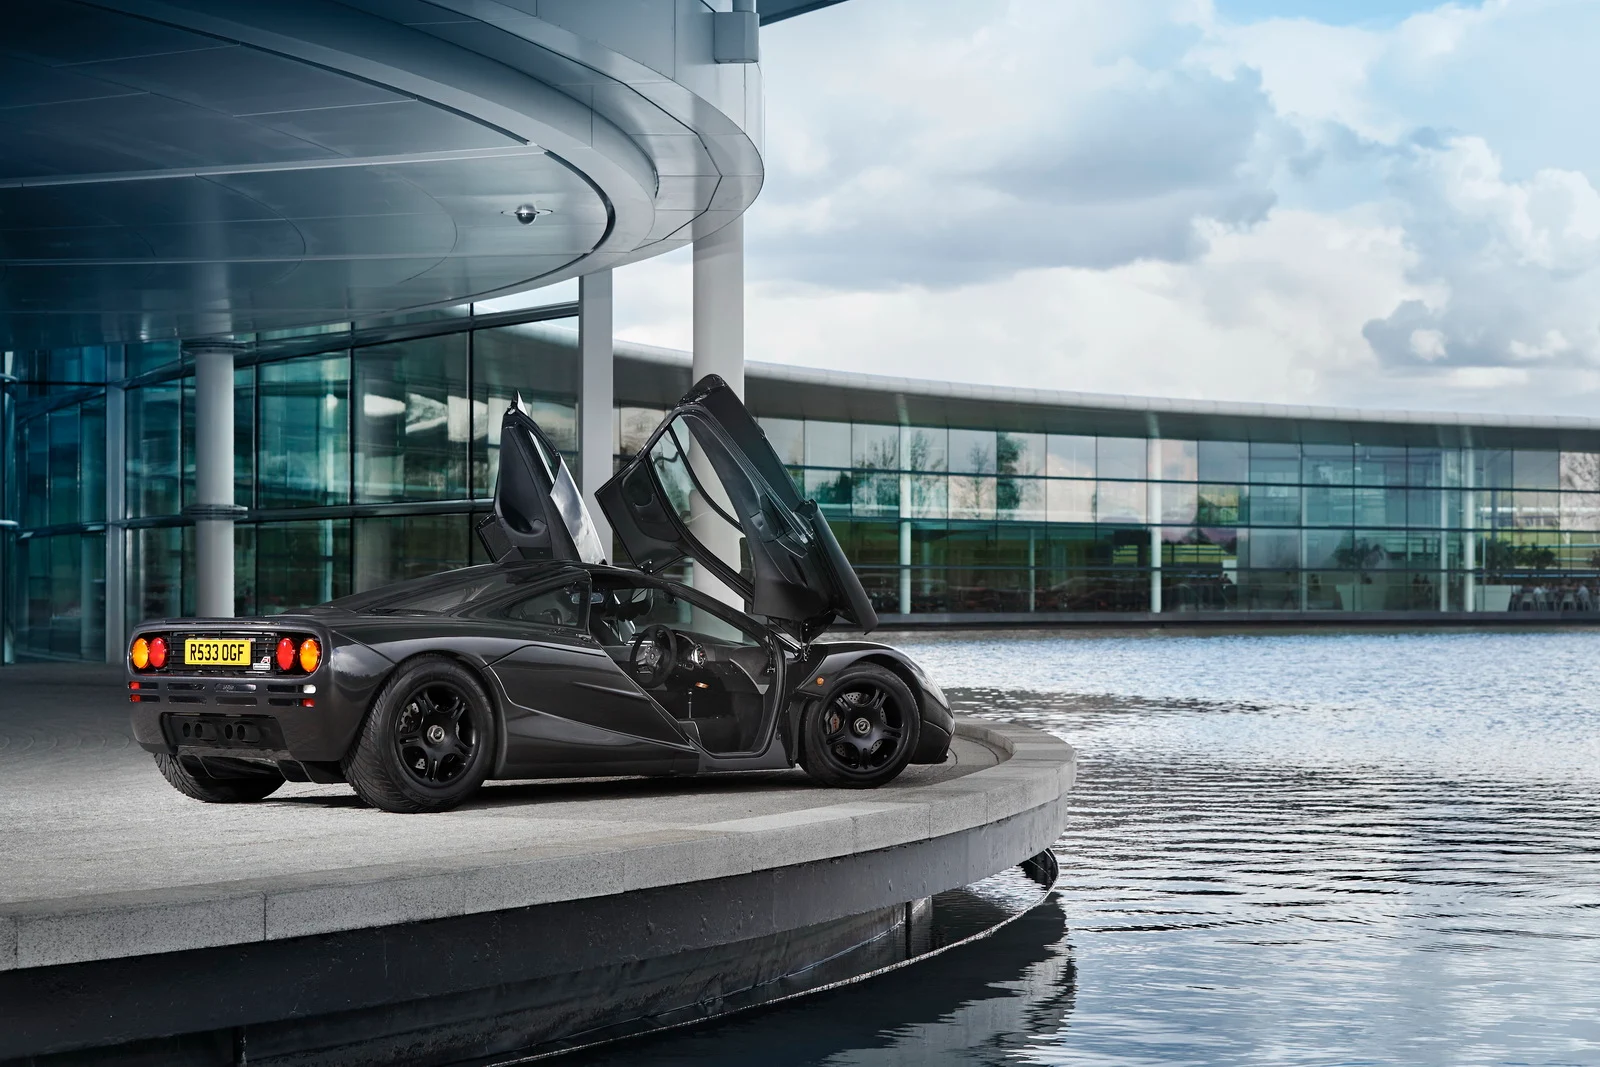 Siêu xe McLaren F1 hút khí tự nhiên nhanh nhất thế giới đang được rao bán 